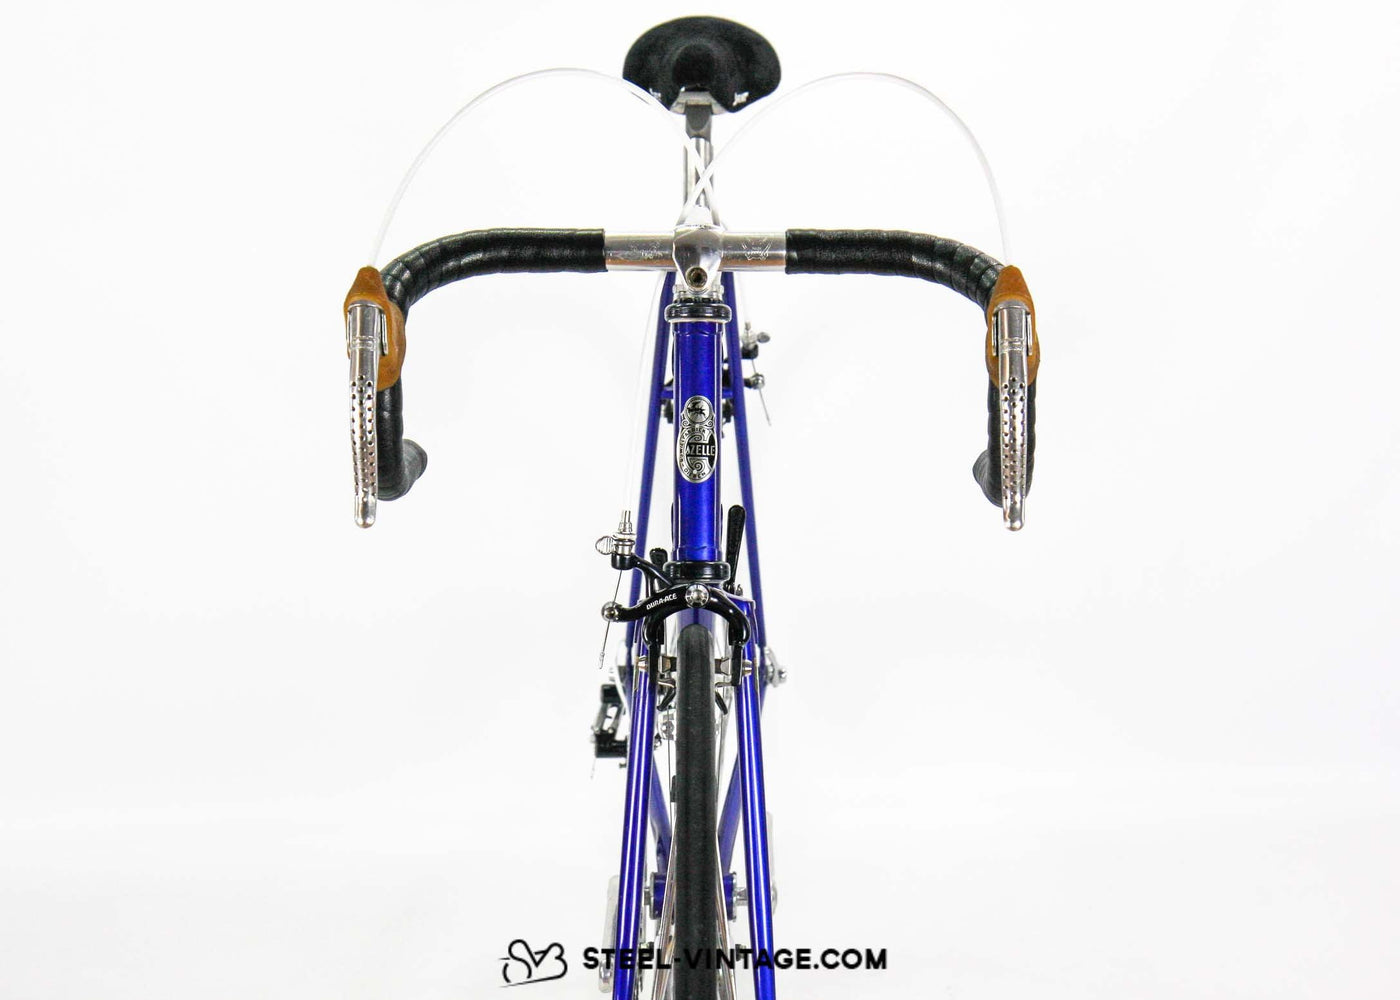 Steel Vintage Bikes - ガゼル・チャンピオン・モンディアル・スーパー 